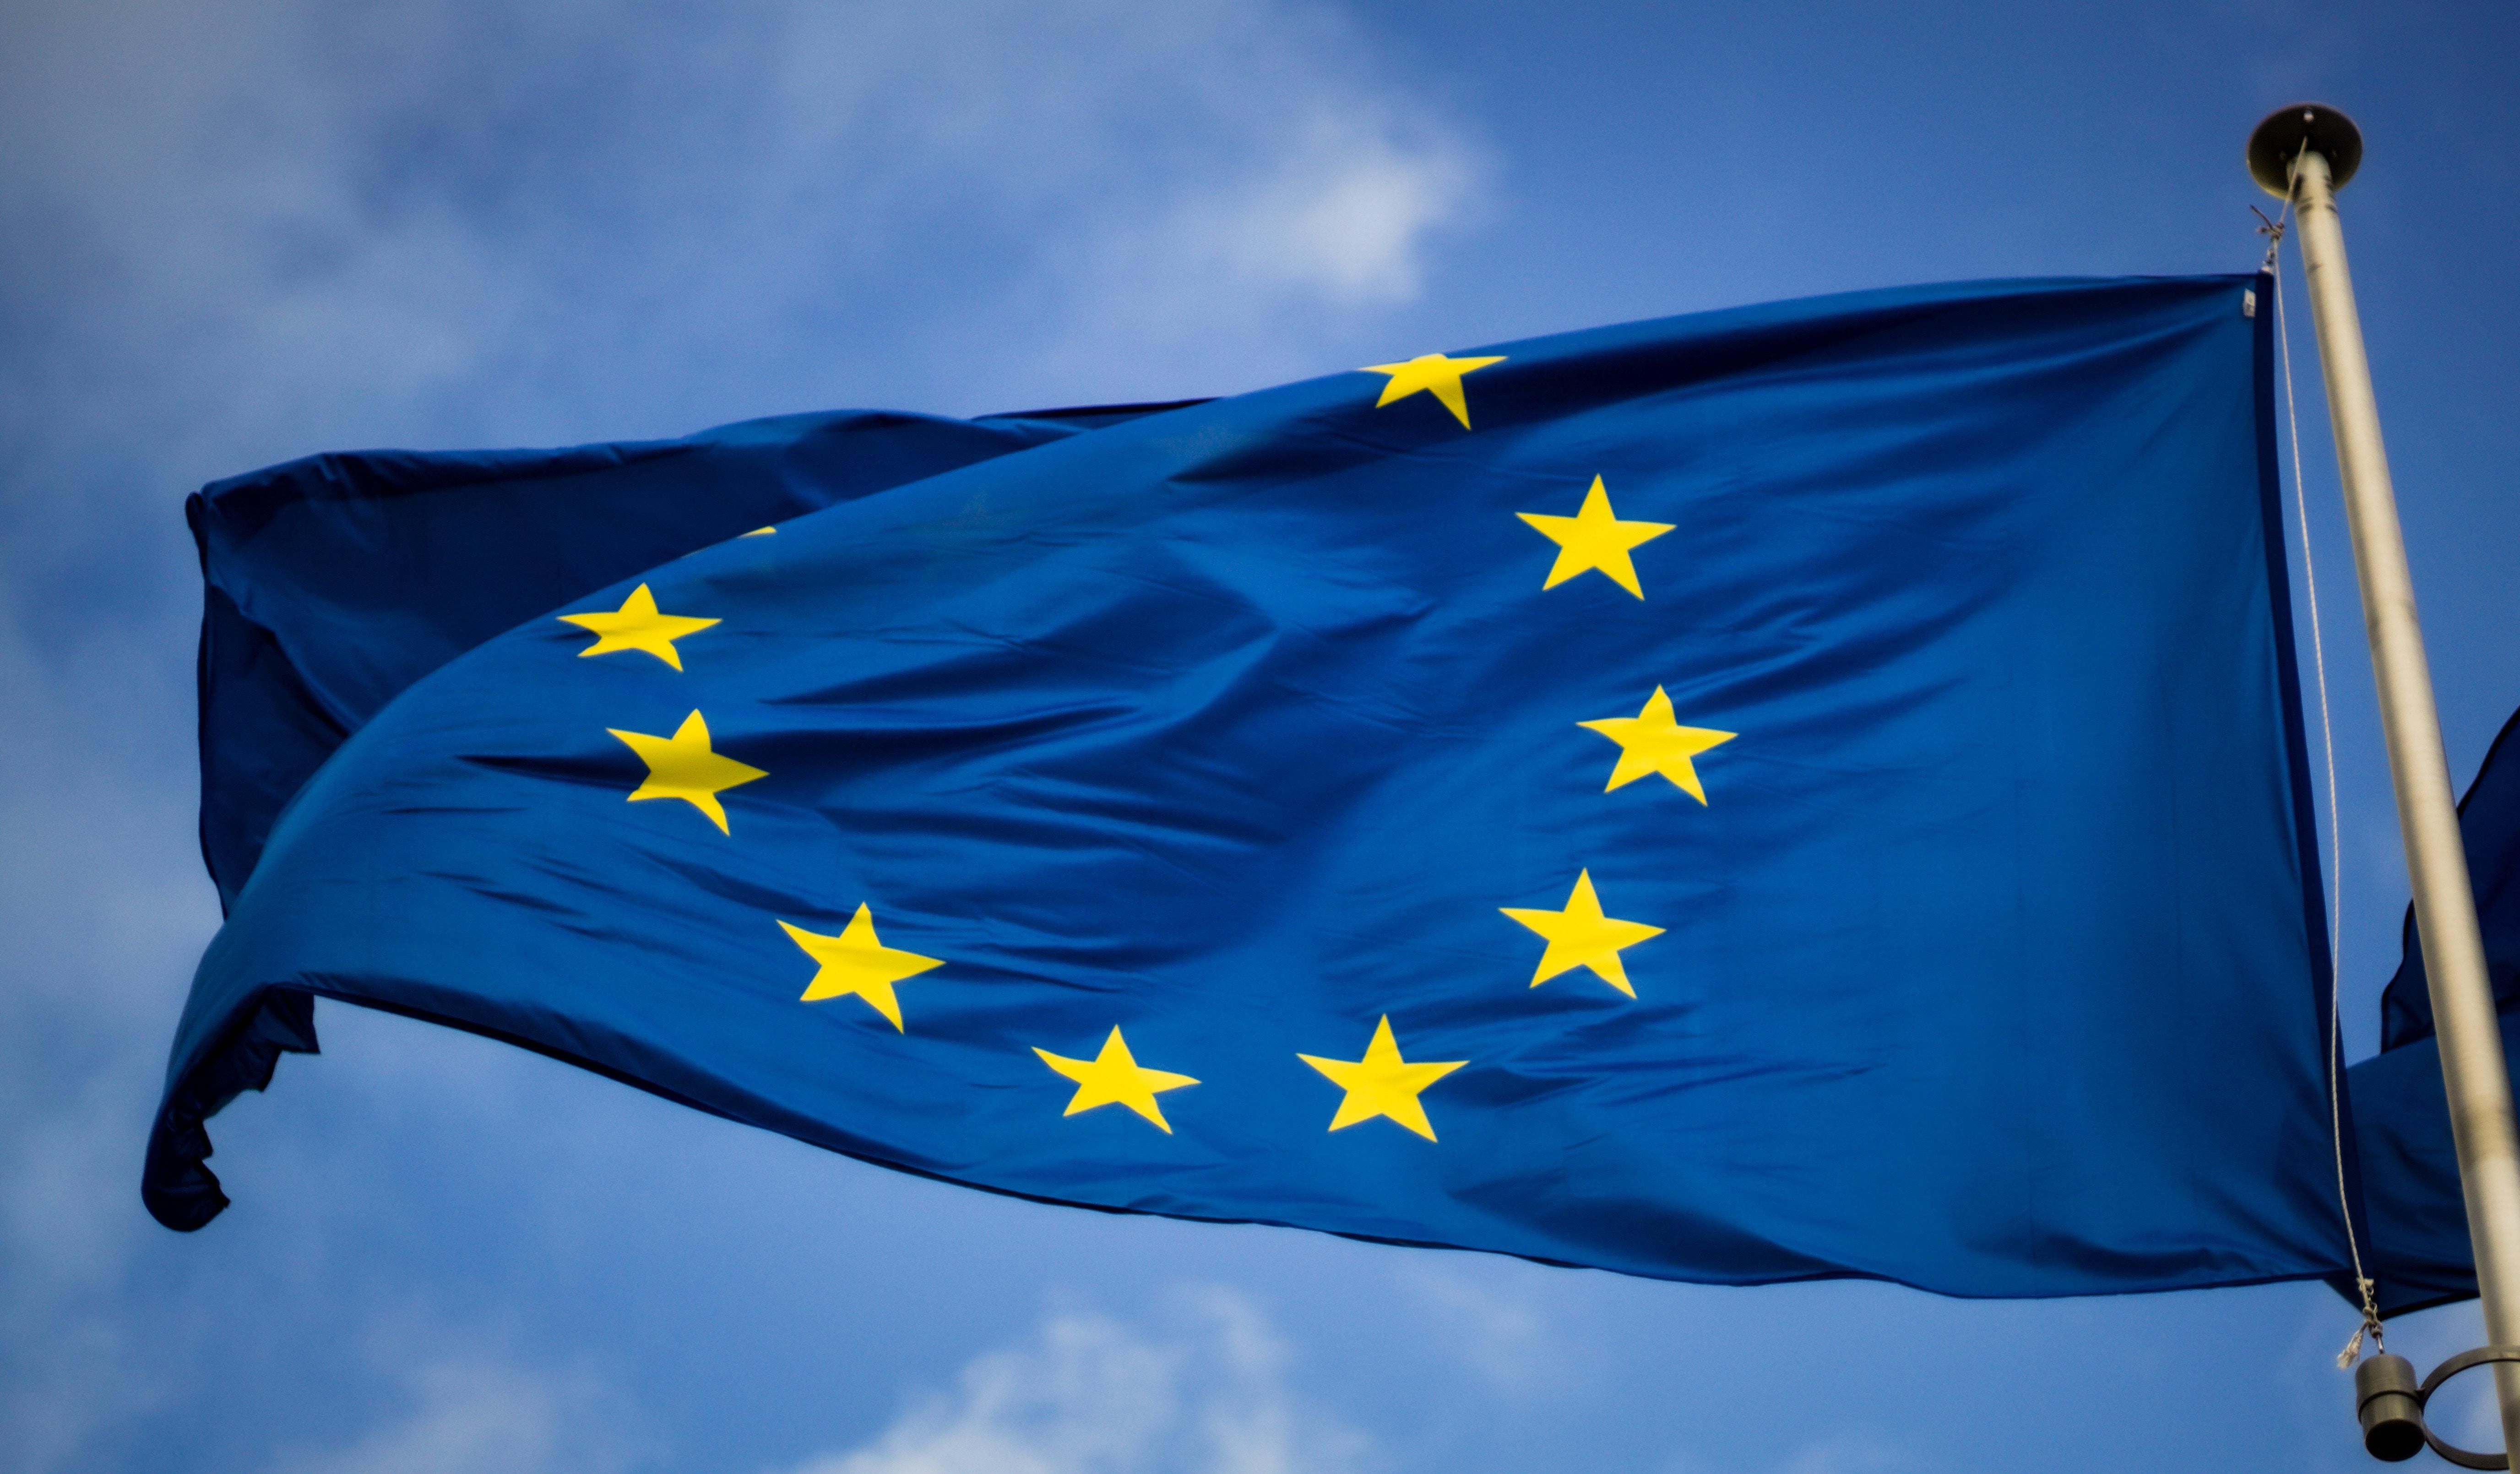 Az Európai Unió zászlója, és a szép kék, kissé felhős égbolt